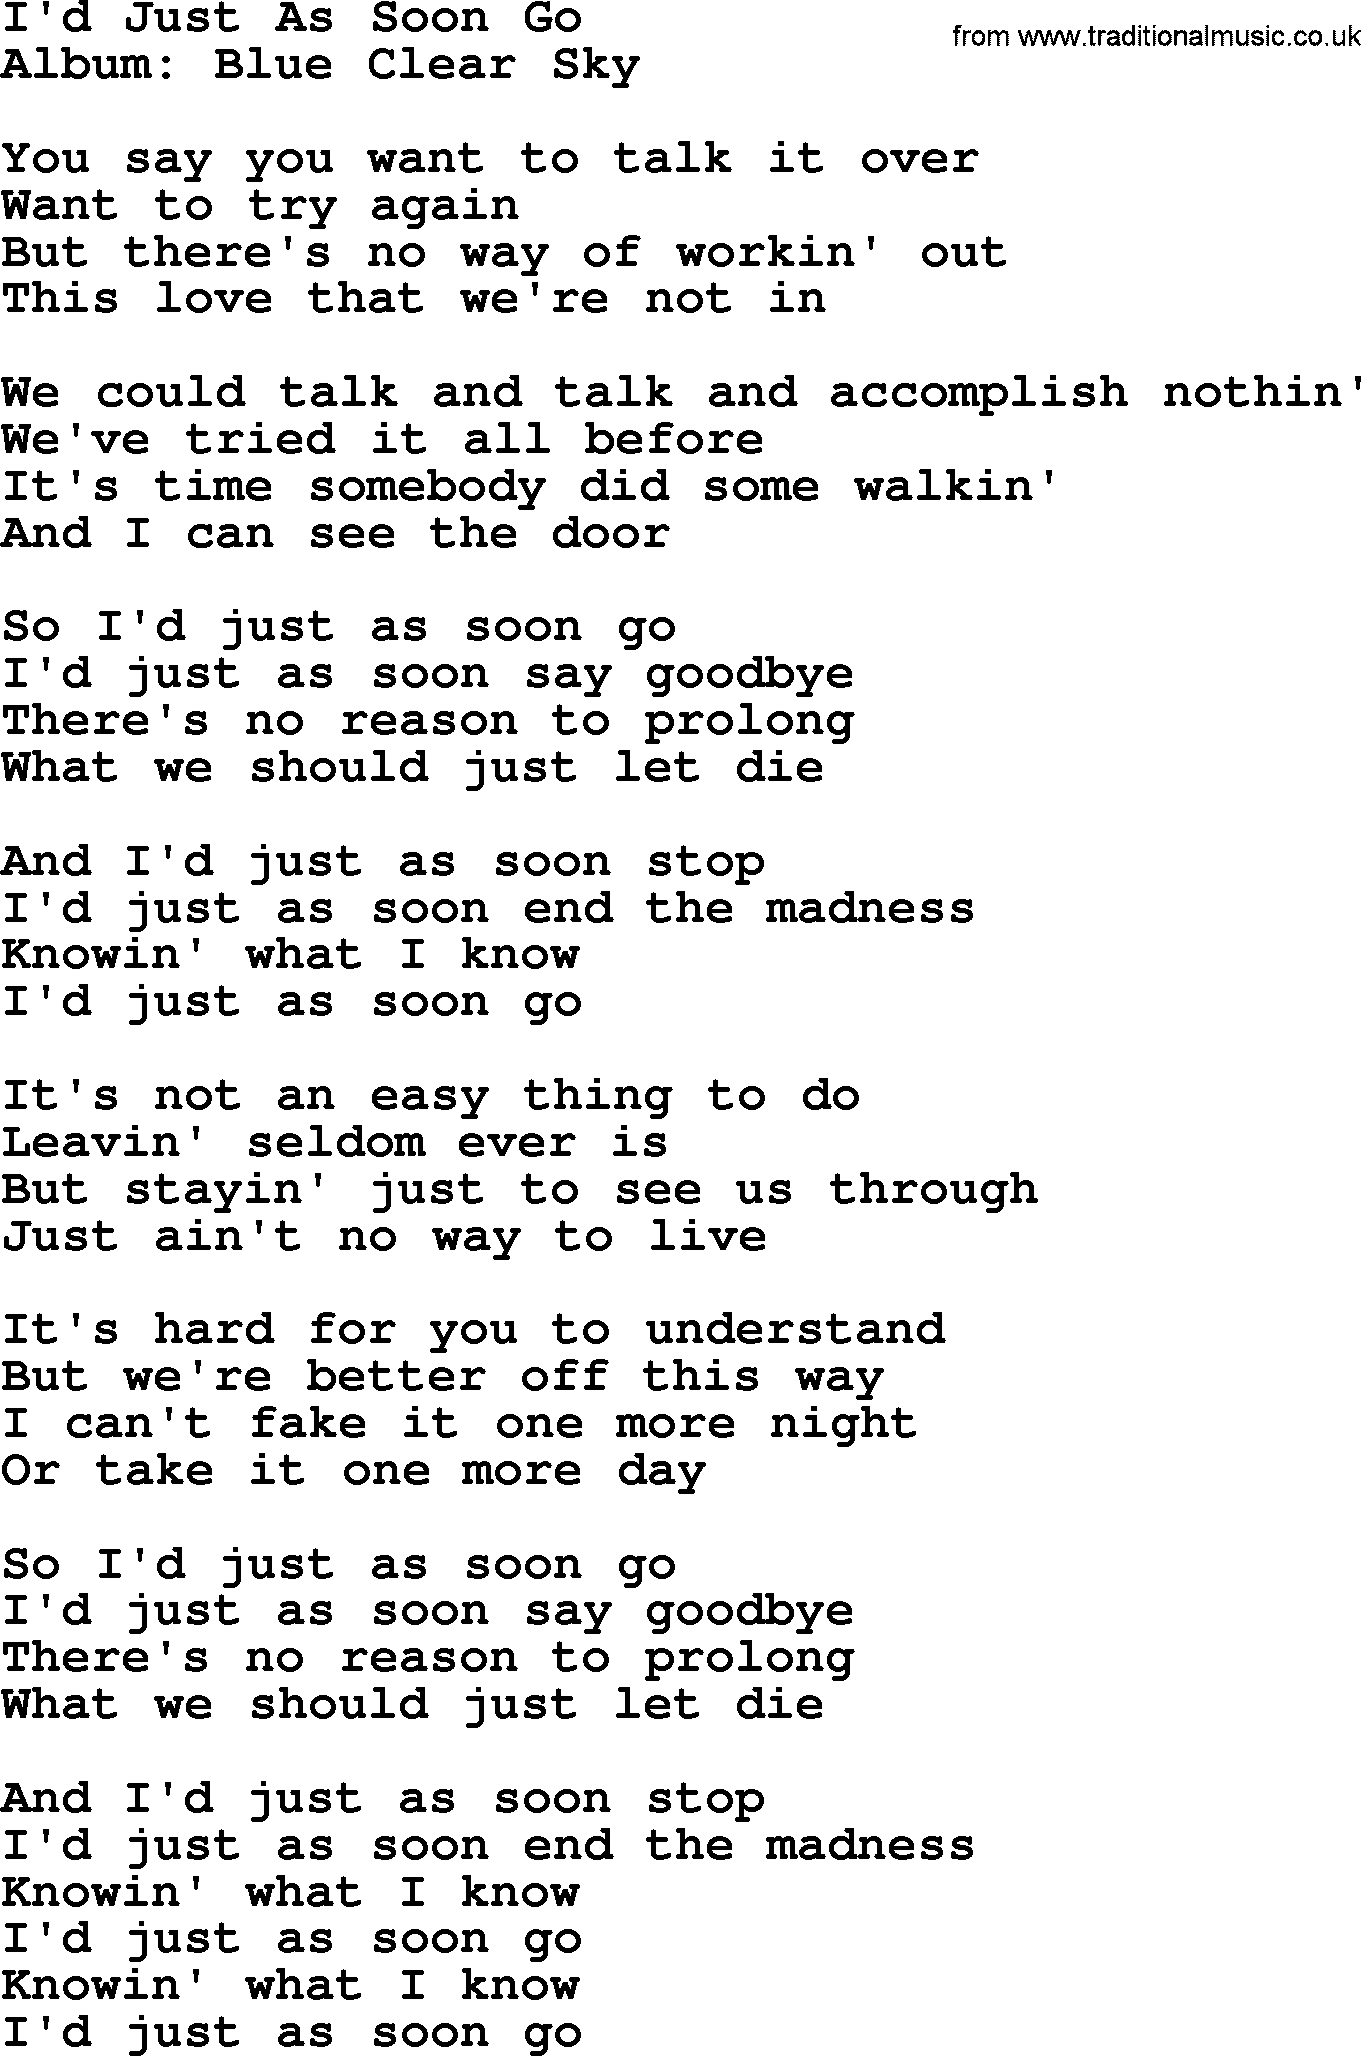 George Strait song: I'd Just As Soon Go, lyrics